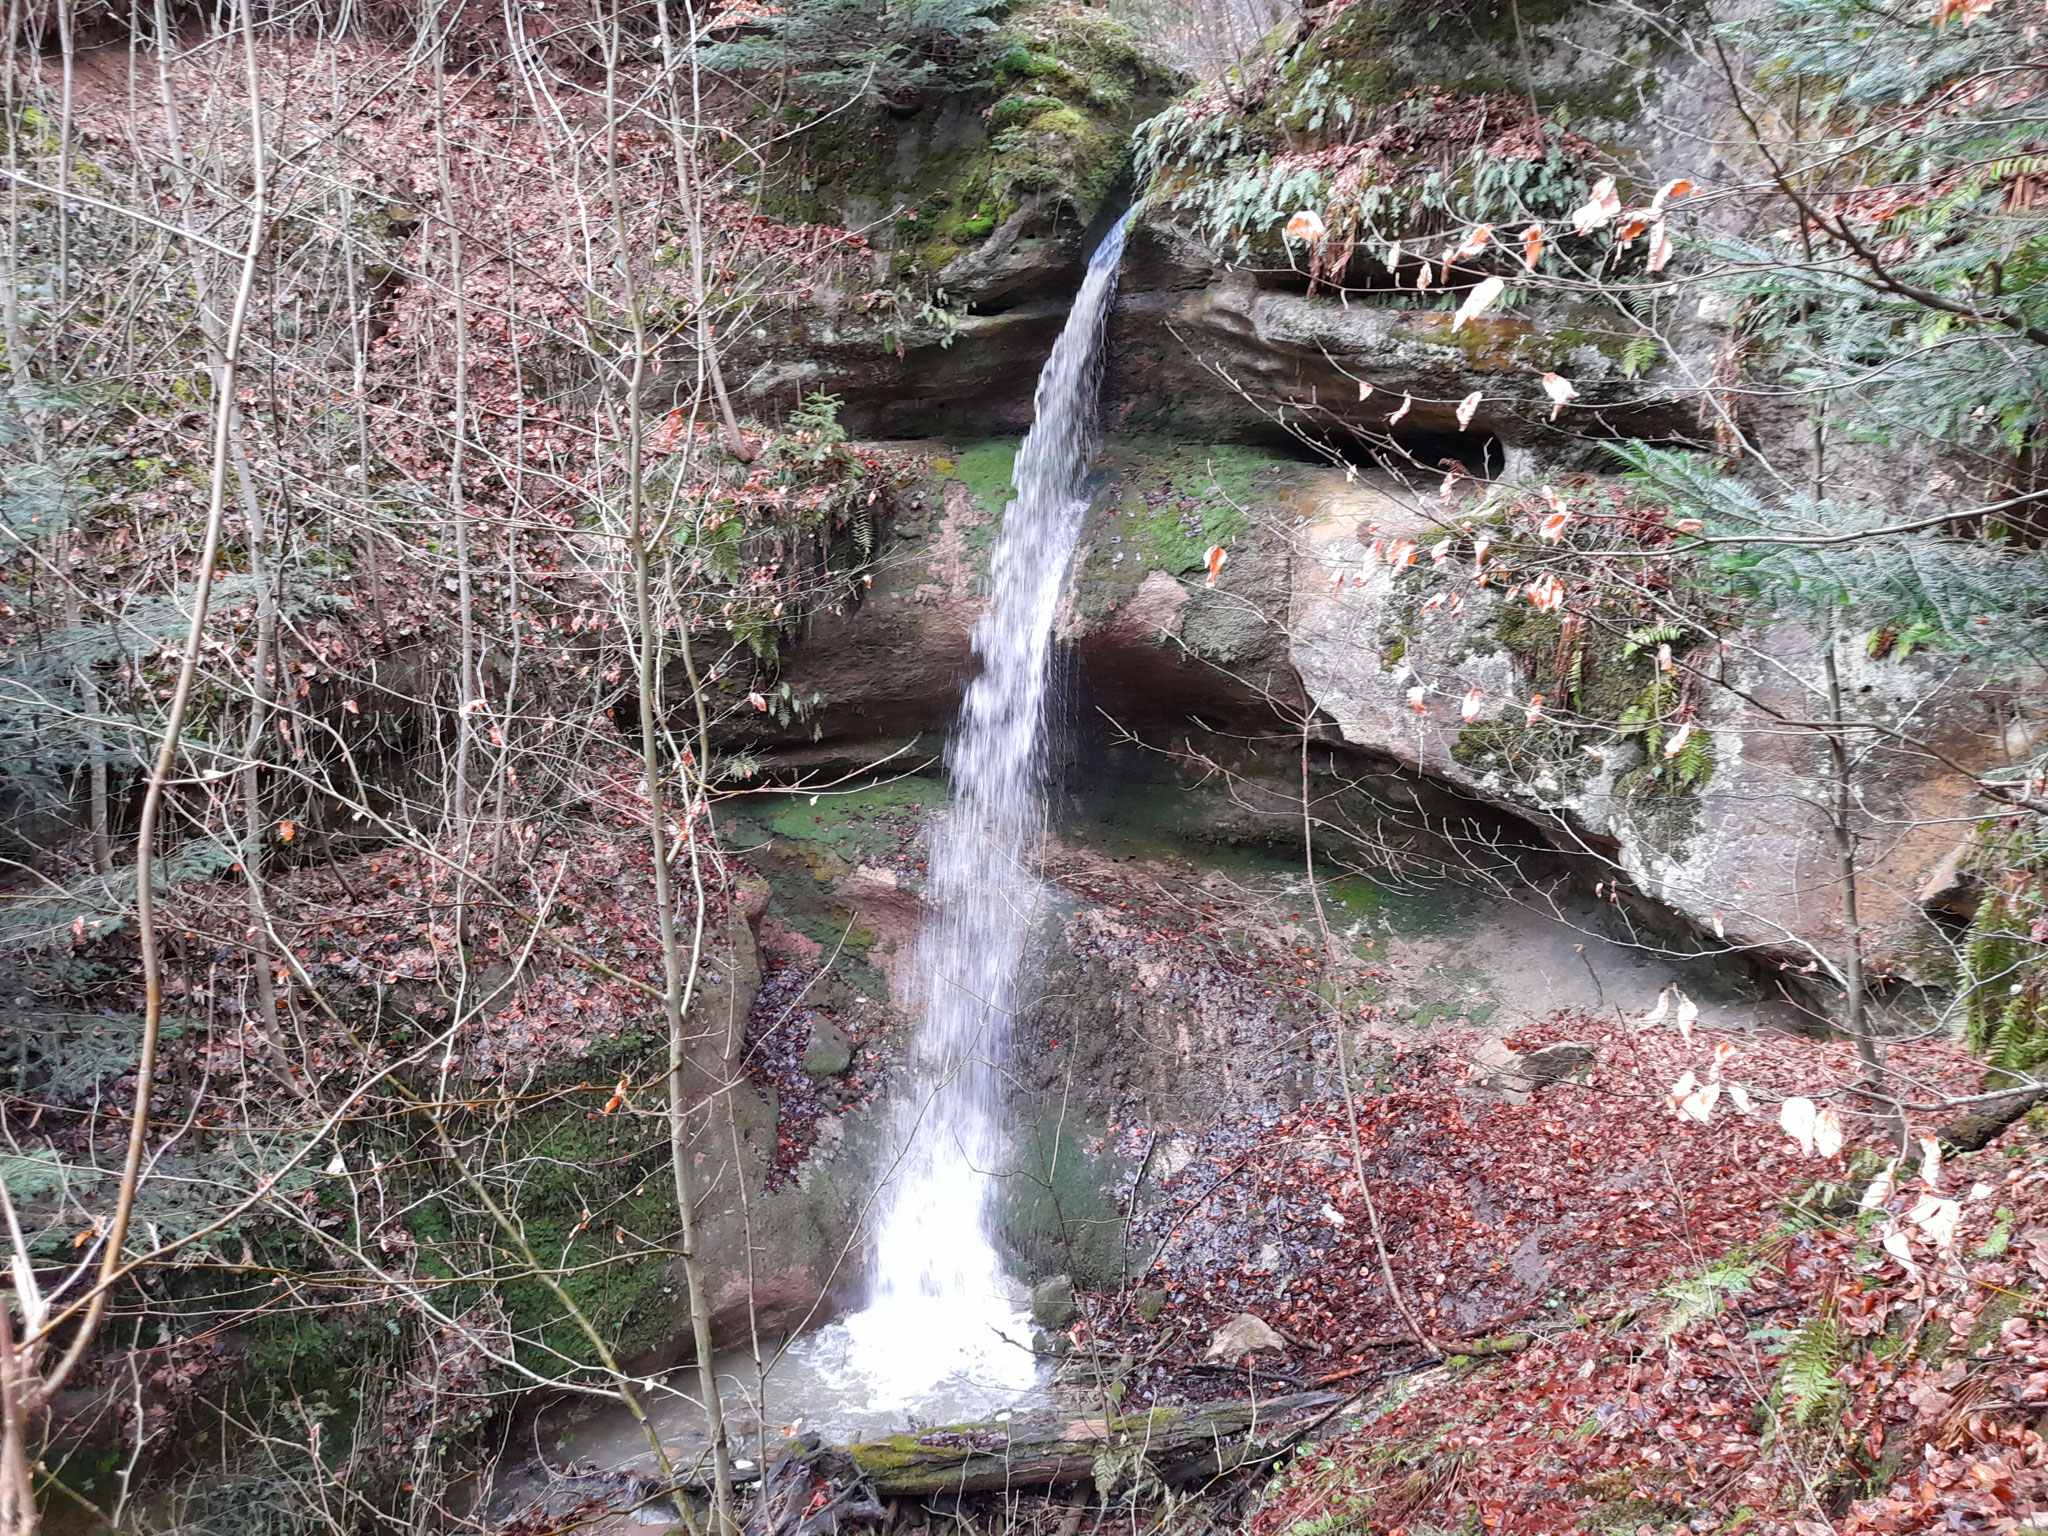 Kuhseich-Wasserfall